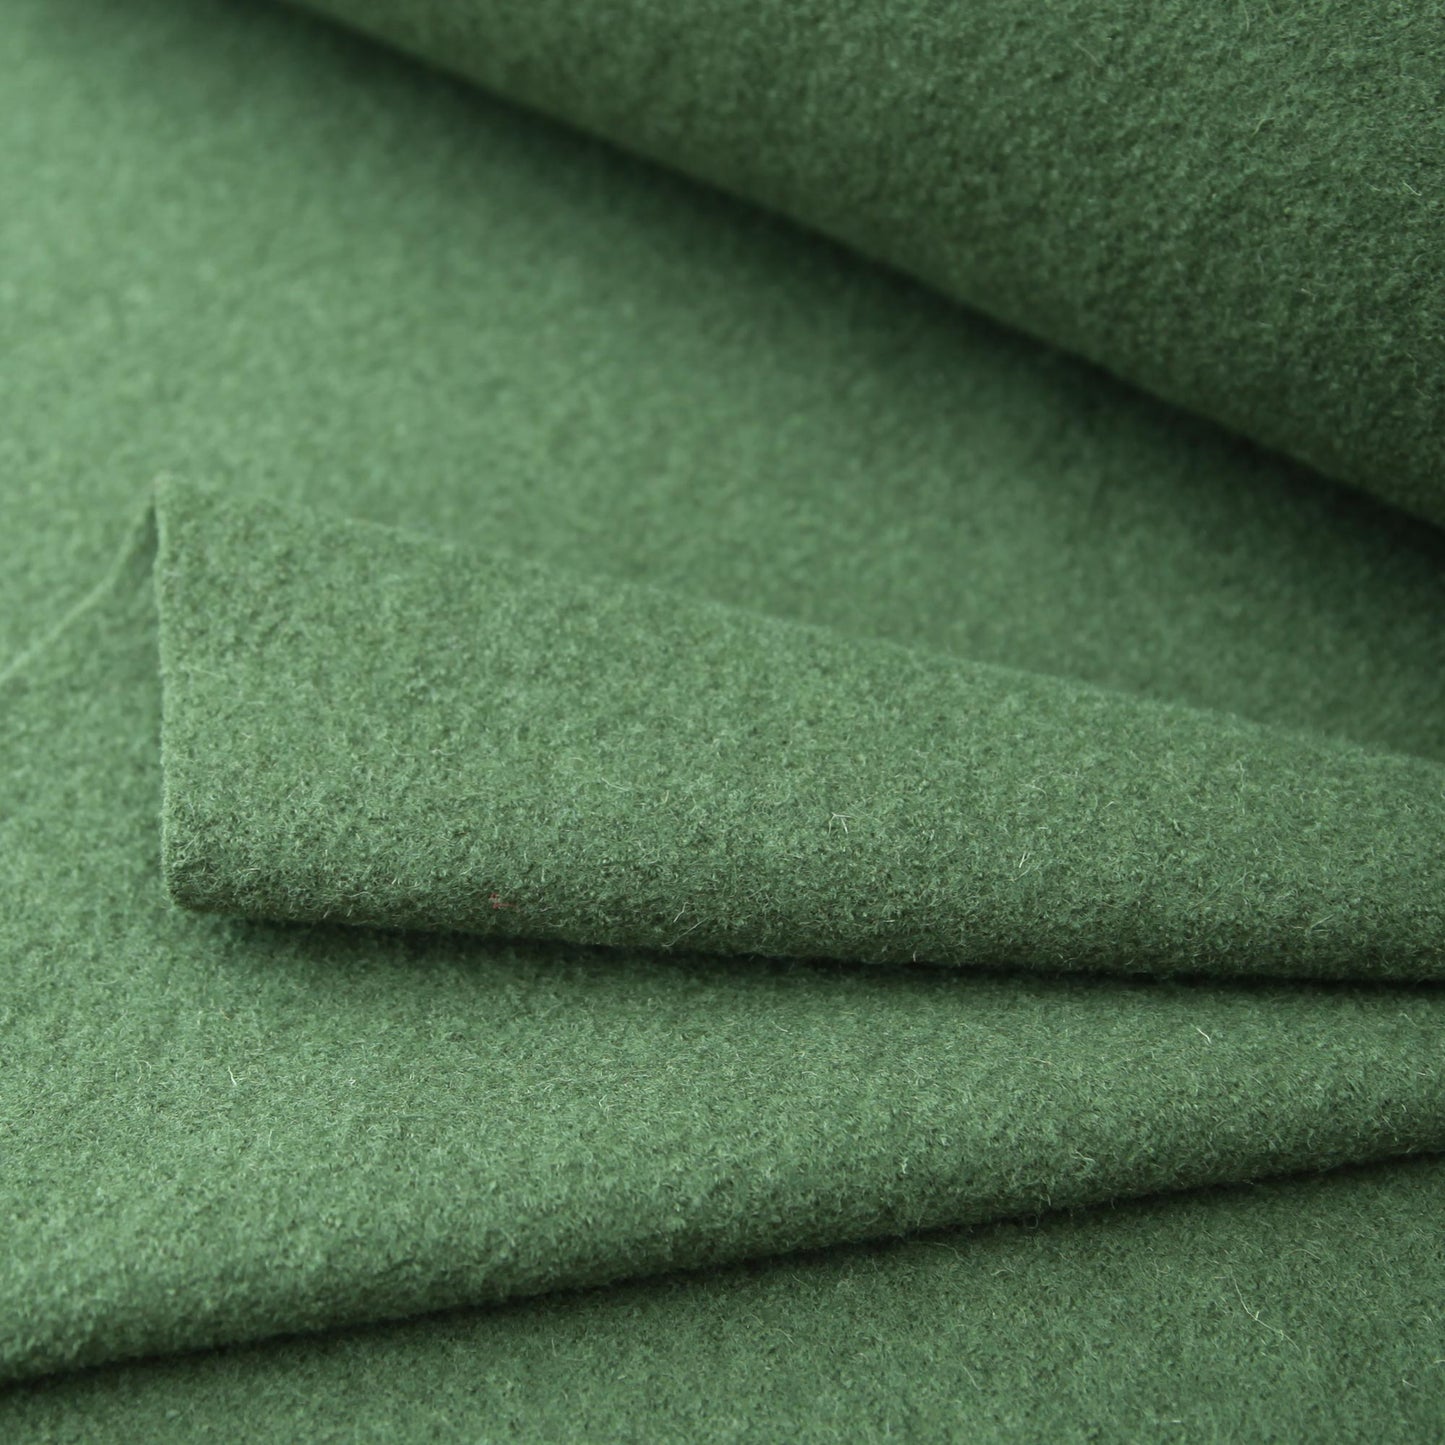 Kochwolle - Walkloden - Wolle - Trachten in der Farbe DunkelgrünWollstoffeStoffe KudellinoStoffe Kudellino